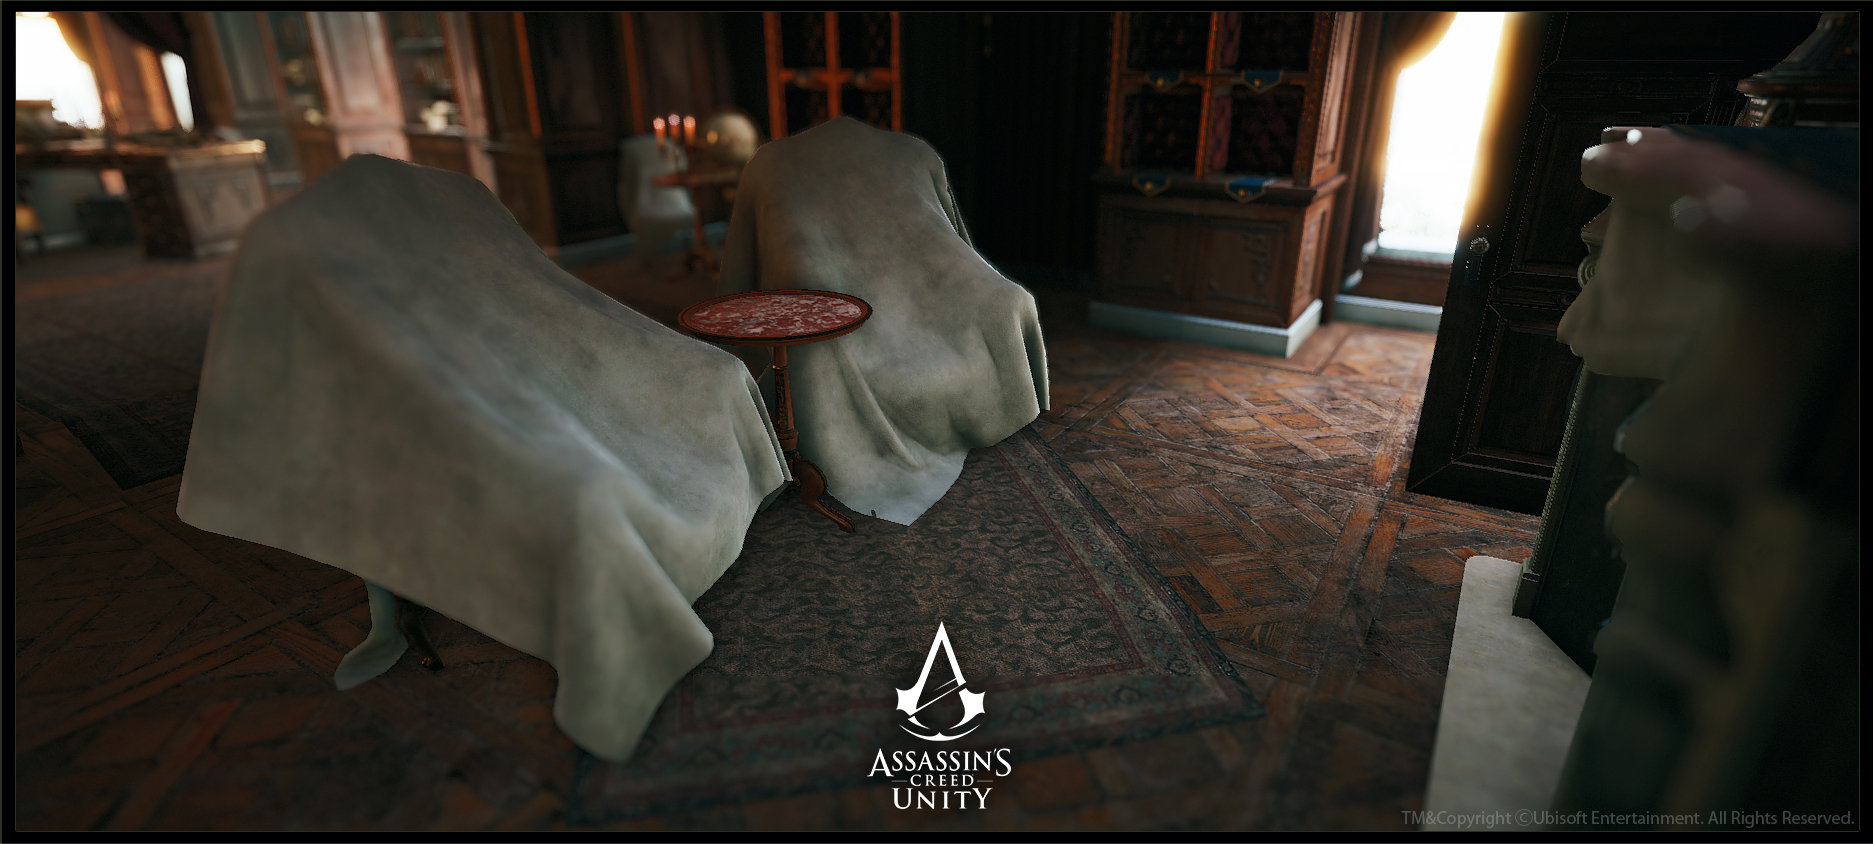 Assassin's Creed Unity - Café Théâtre, Pierre FLEAU  Assassins creed unity,  Assassins creed, Fantasy places